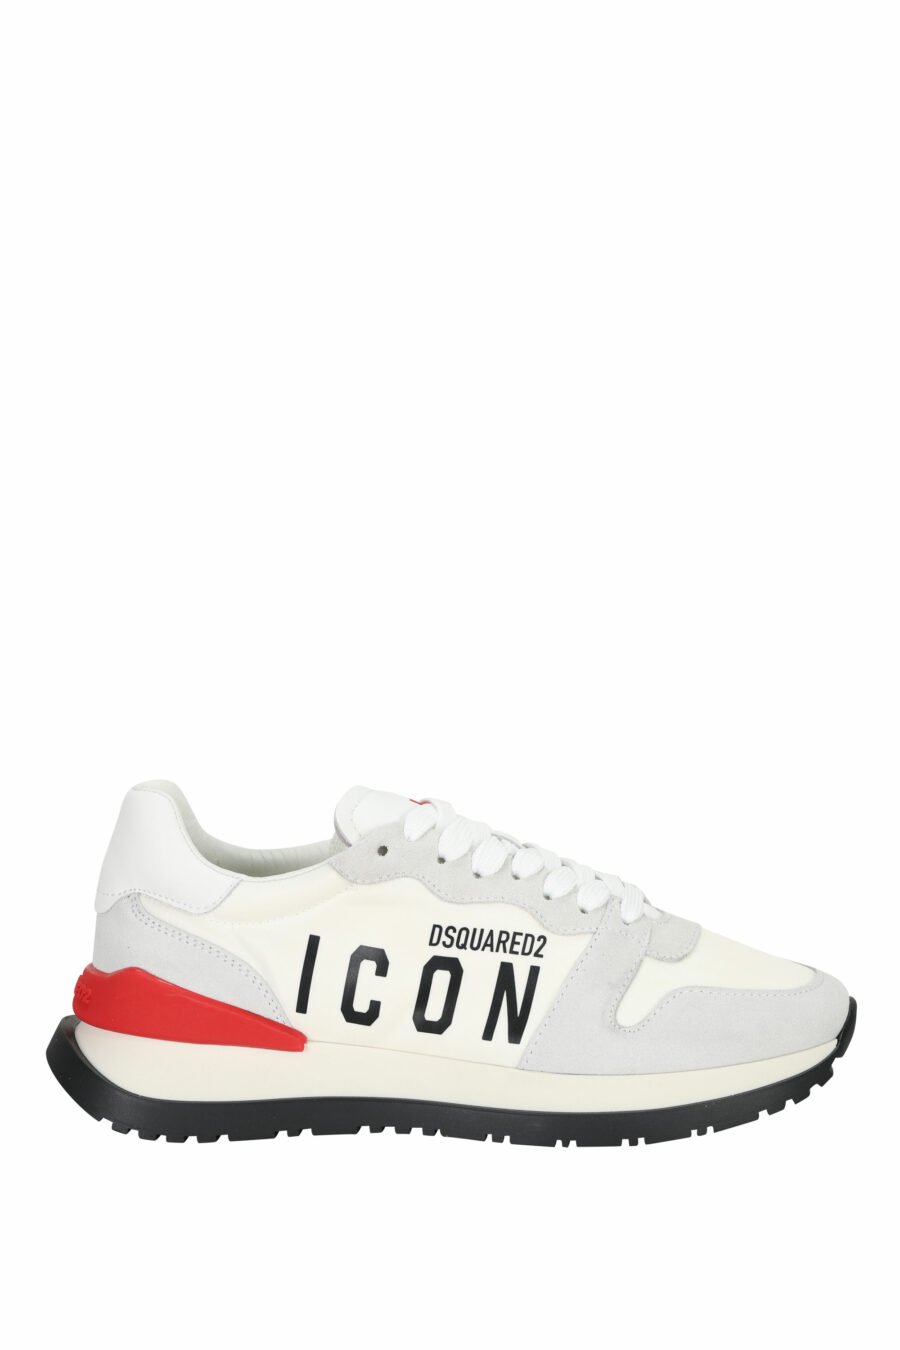 Zapatillas blancas mix con rojo y minilogo "icon" - 8055777303870